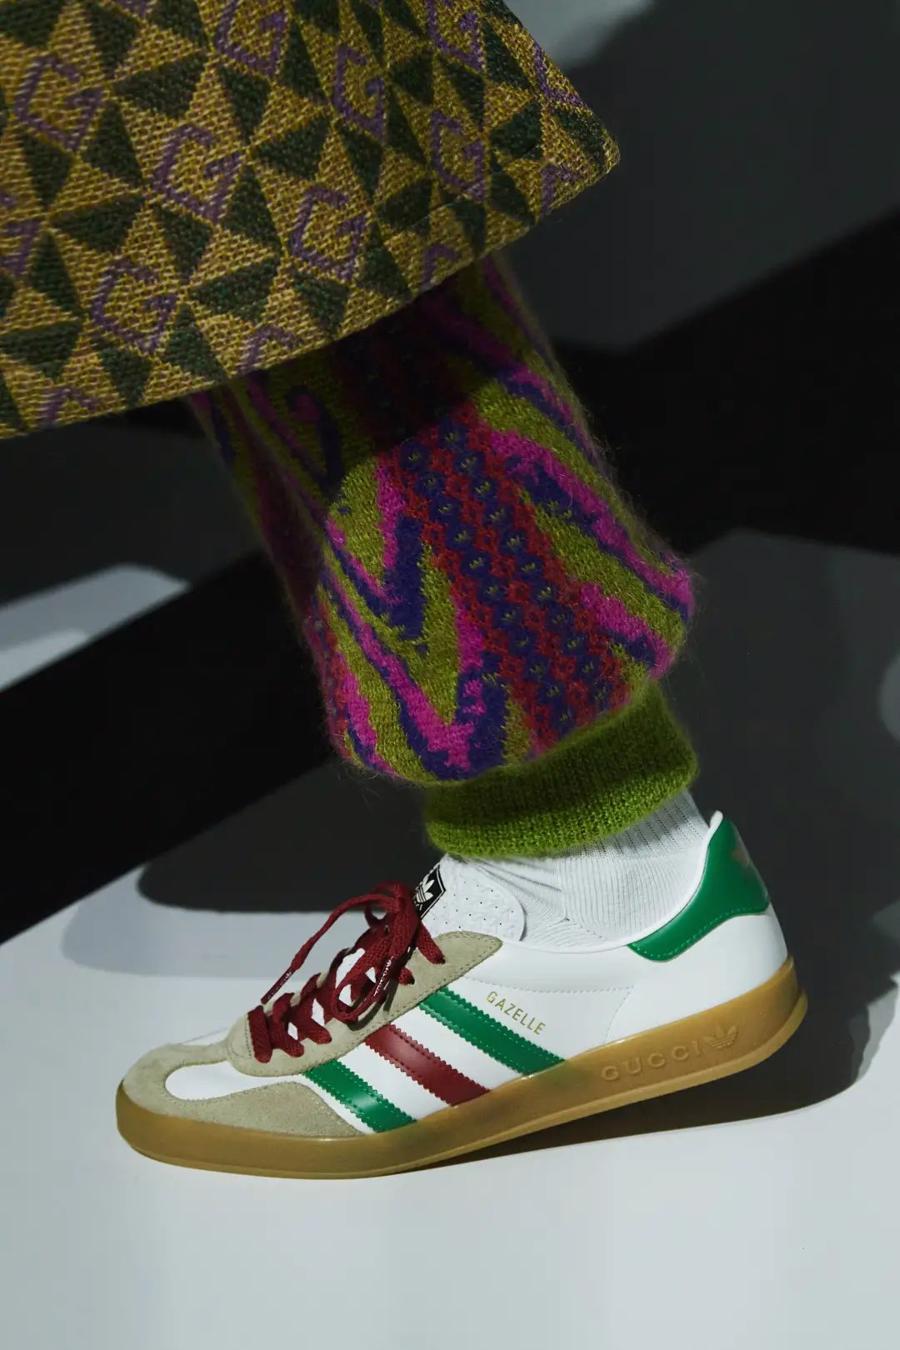 Gucci “bắt tay” Adidas: BST đảm bảo doanh thu nhất năm 2022 - Ảnh 23